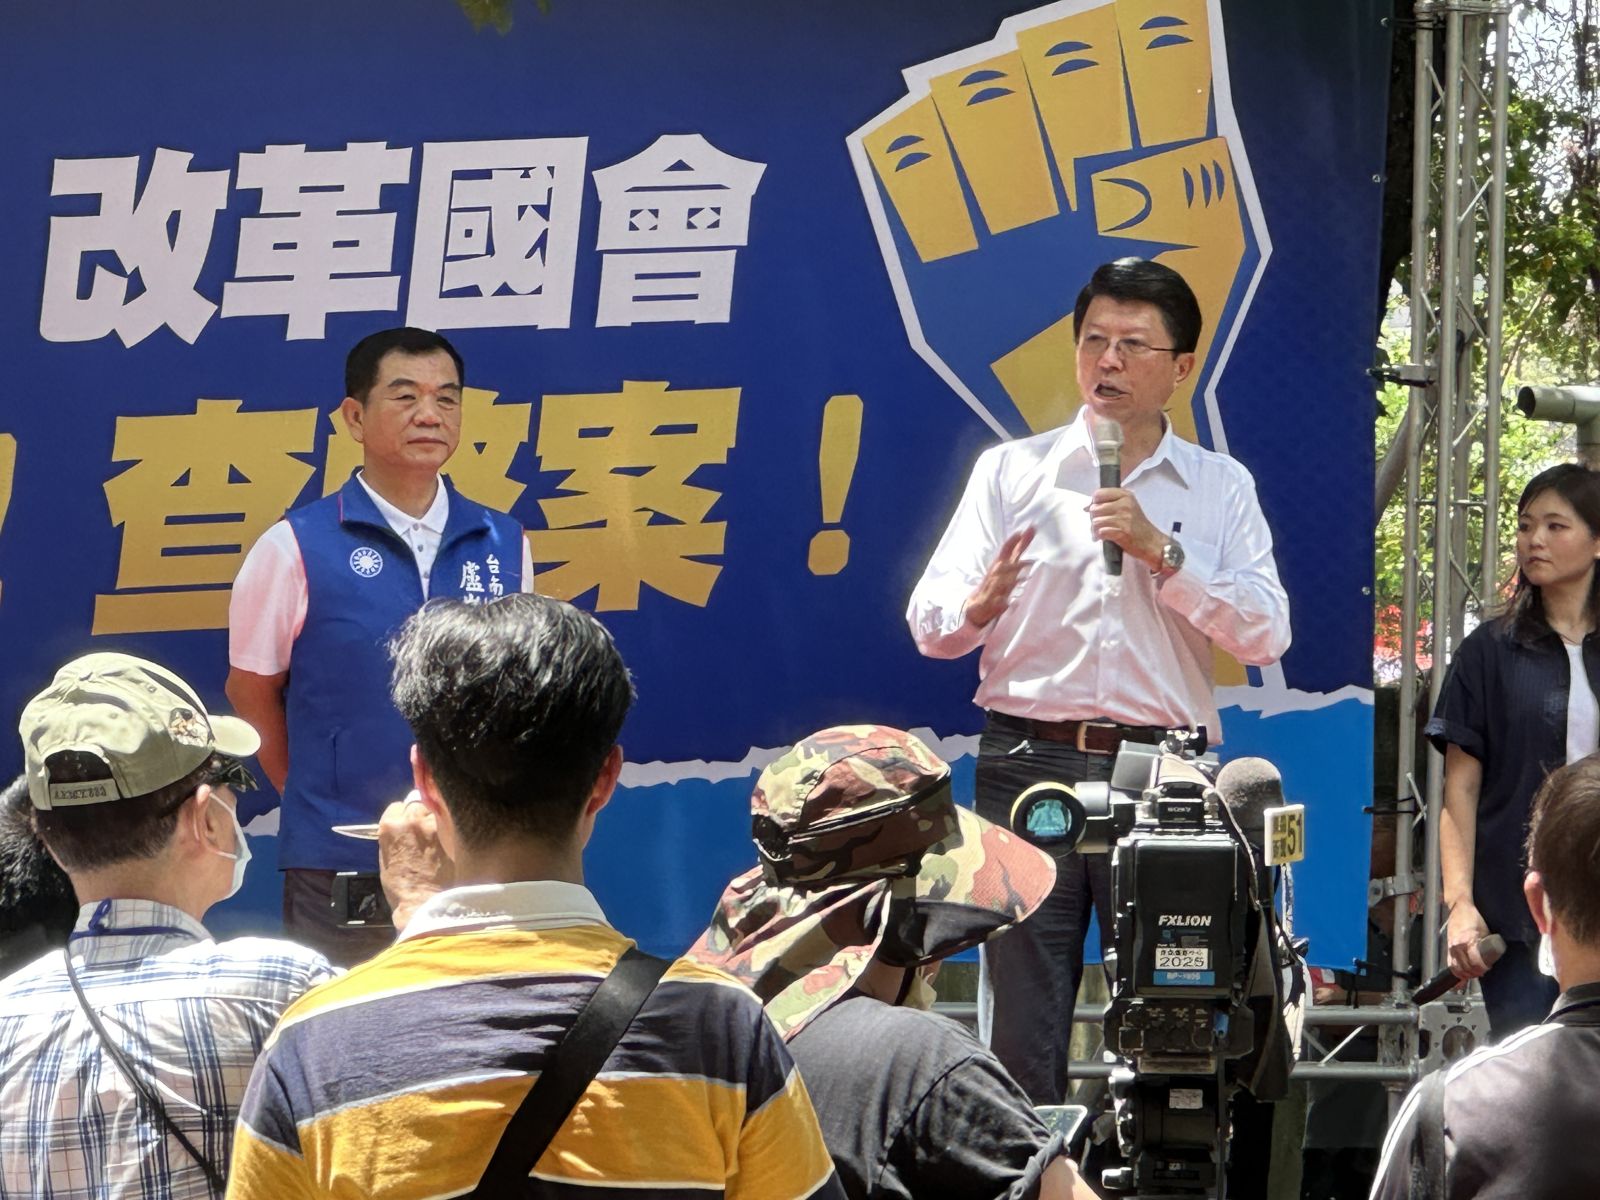 國民黨台南市黨部主委謝龍介能言善道，善於凝聚支持者向心力。辛啓松攝